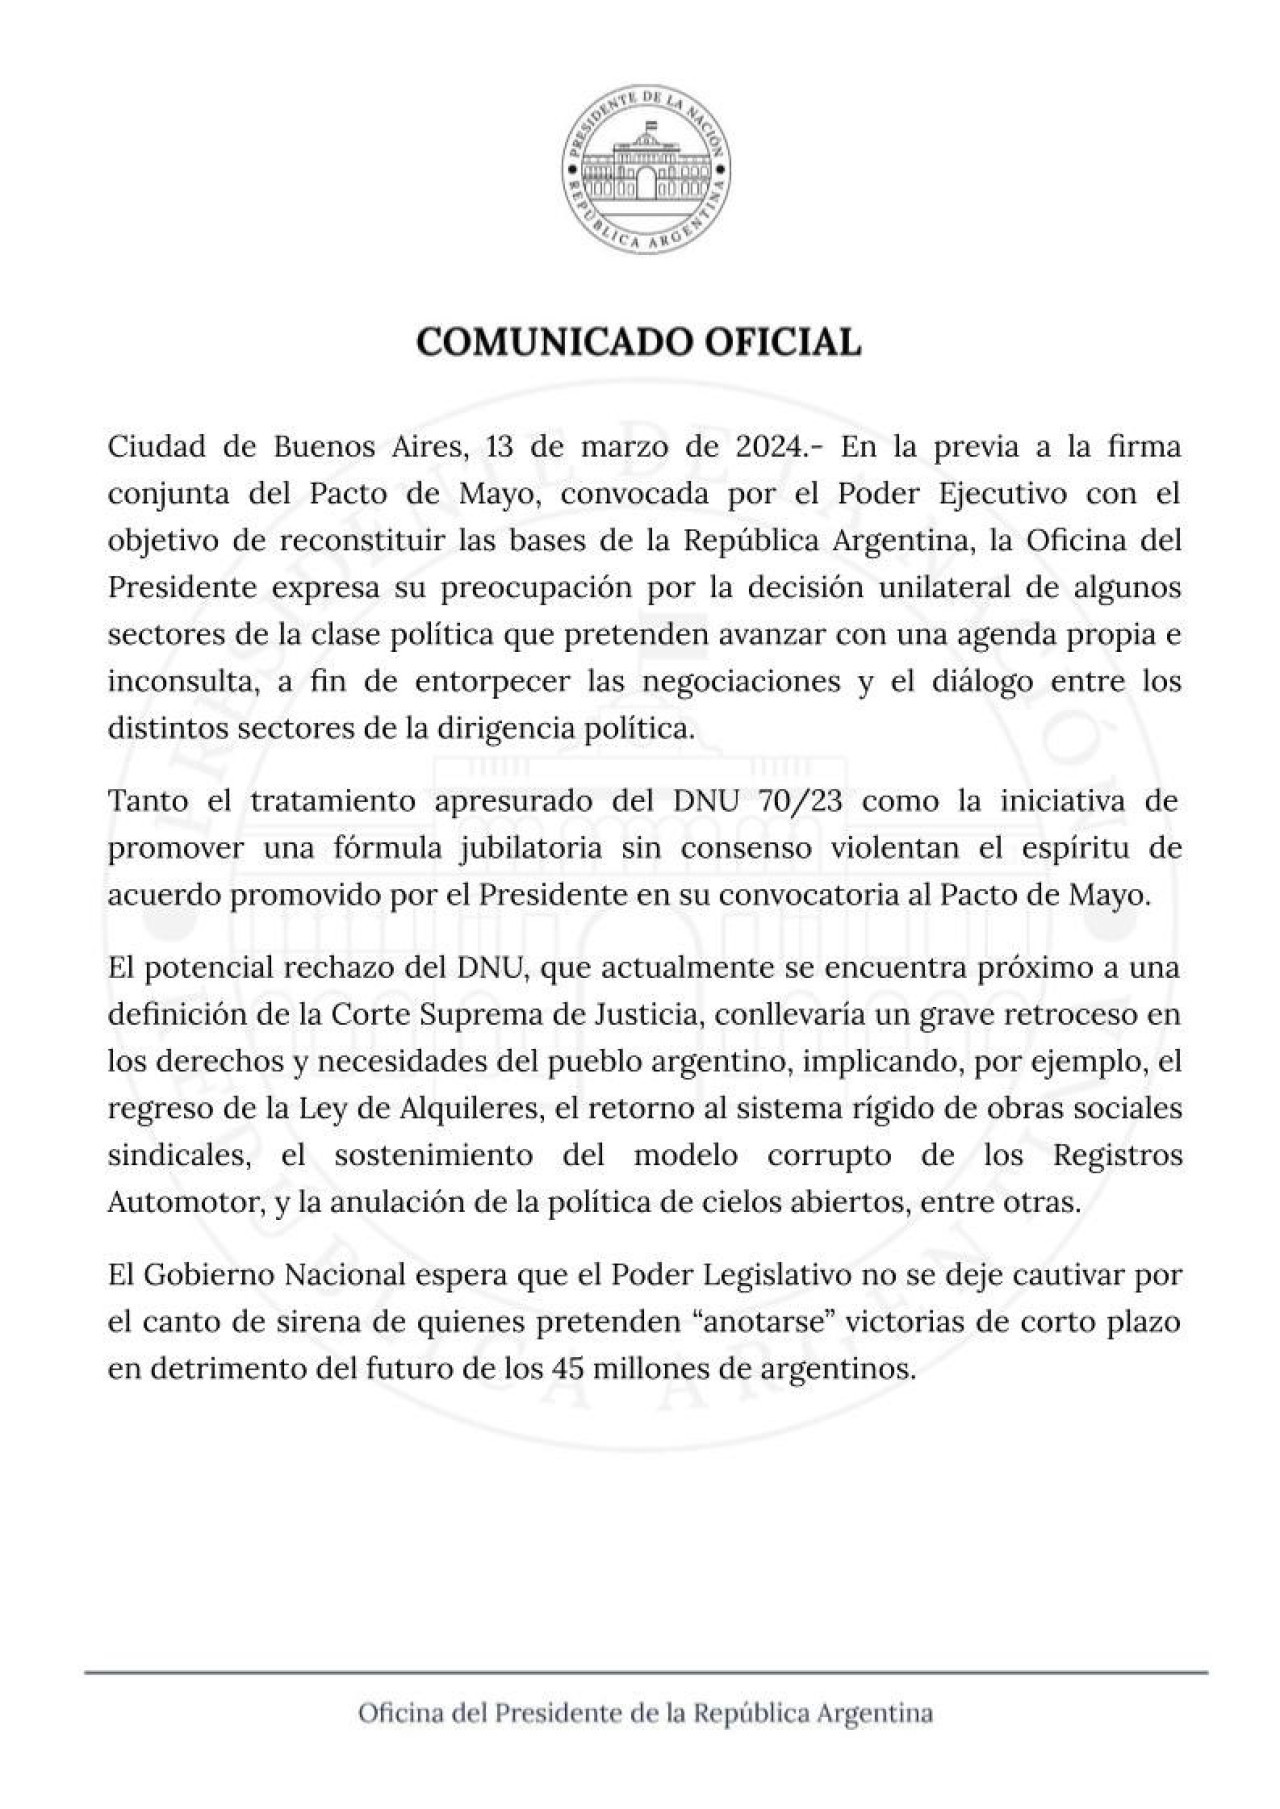 Comunicado del gobierno de Javier Milei en la previa al debate en el Senado por el DNU - Parte 1. Foto: @OPRArgentina.